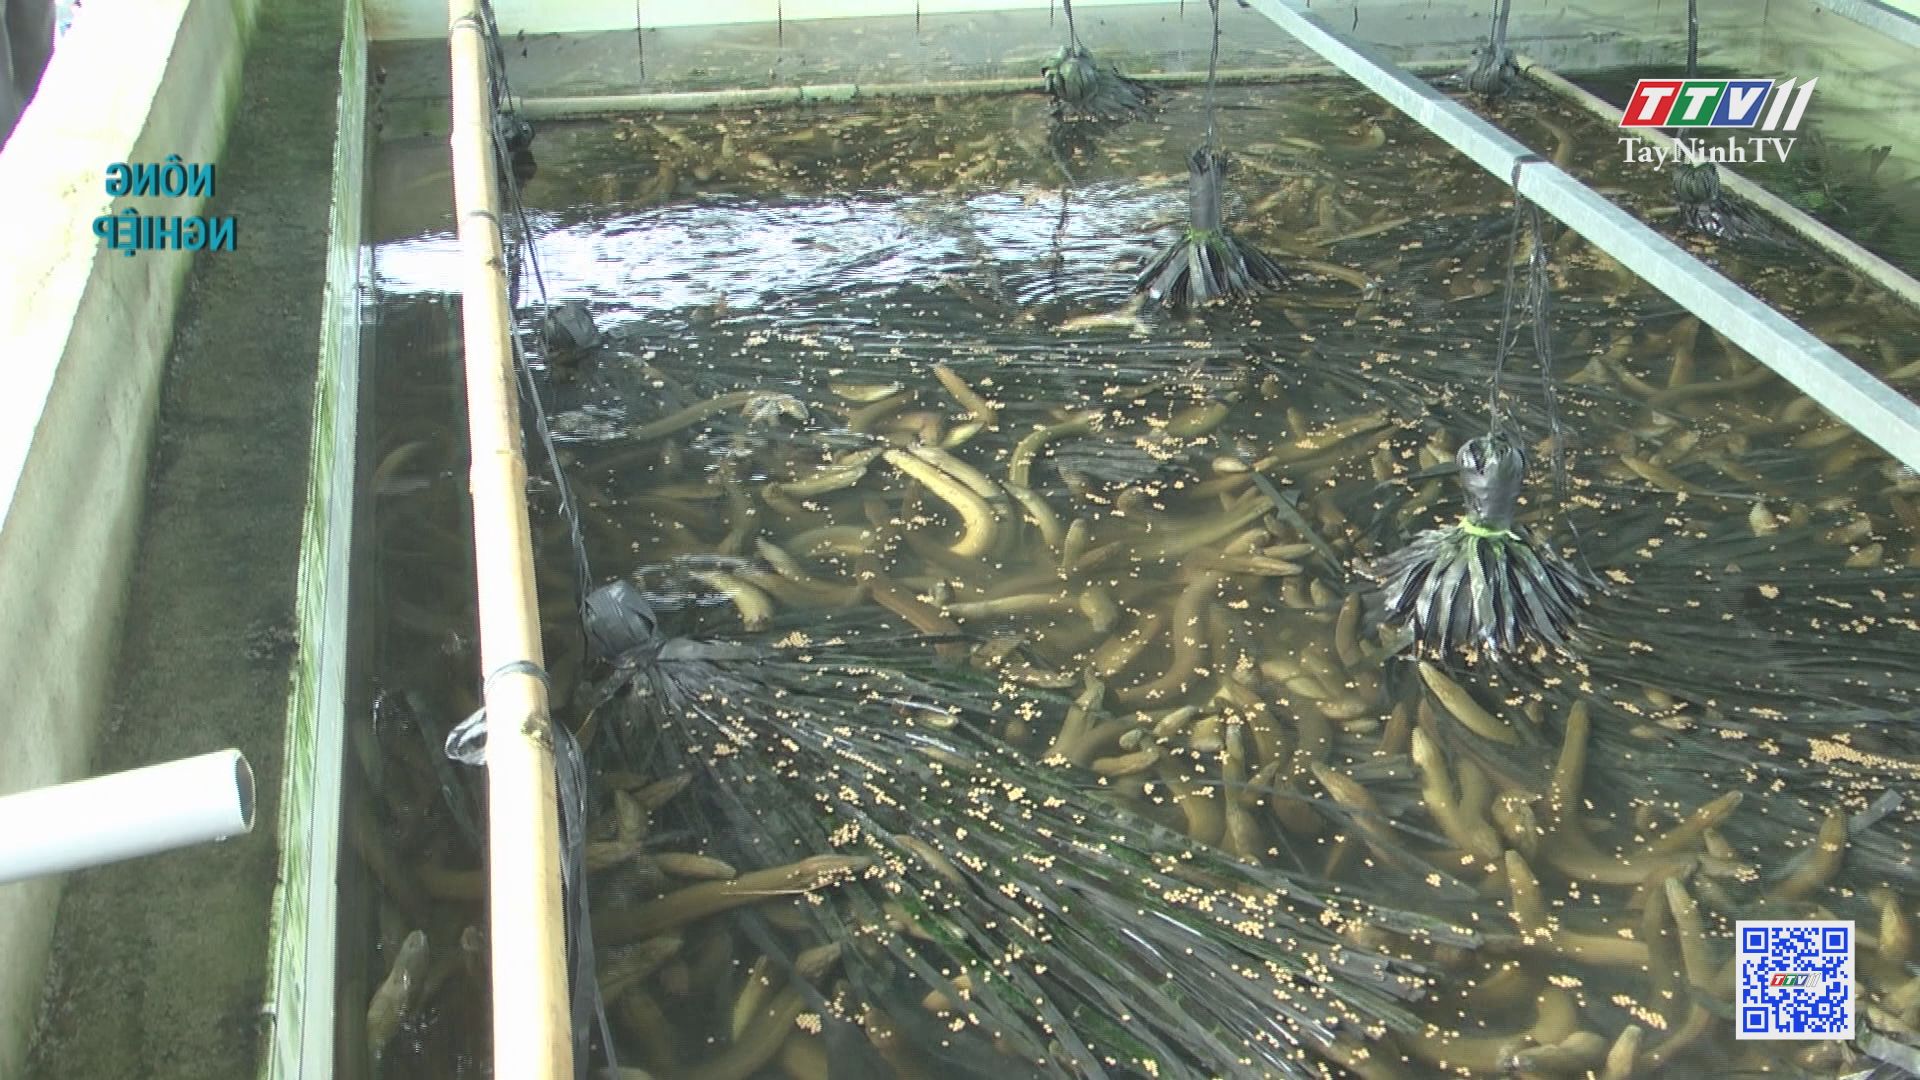 Mô hình nuôi lươn-cá kết hợp | Nông nghiệp Tây Ninh | TayNinhTV